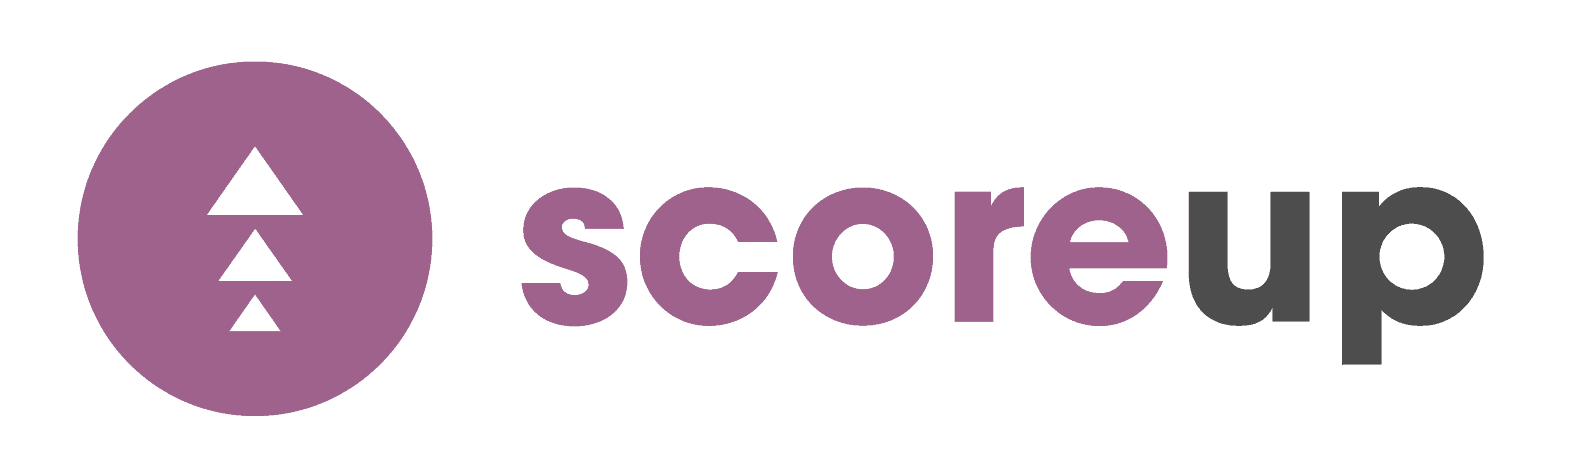 score-up logo smarter loans